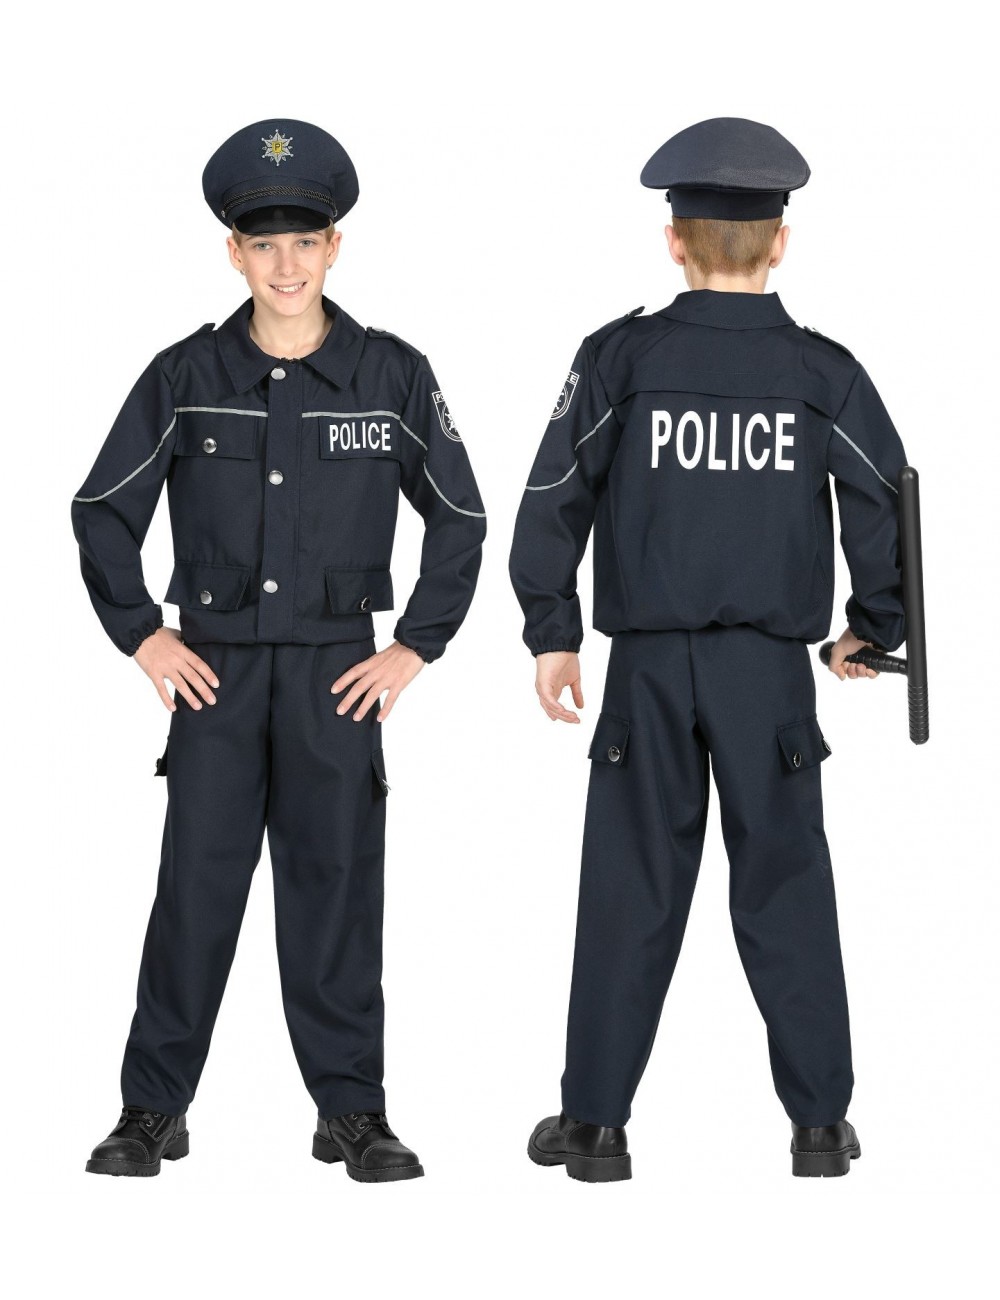 Déguisement uniforme policière et accessoires Fille 12 ans